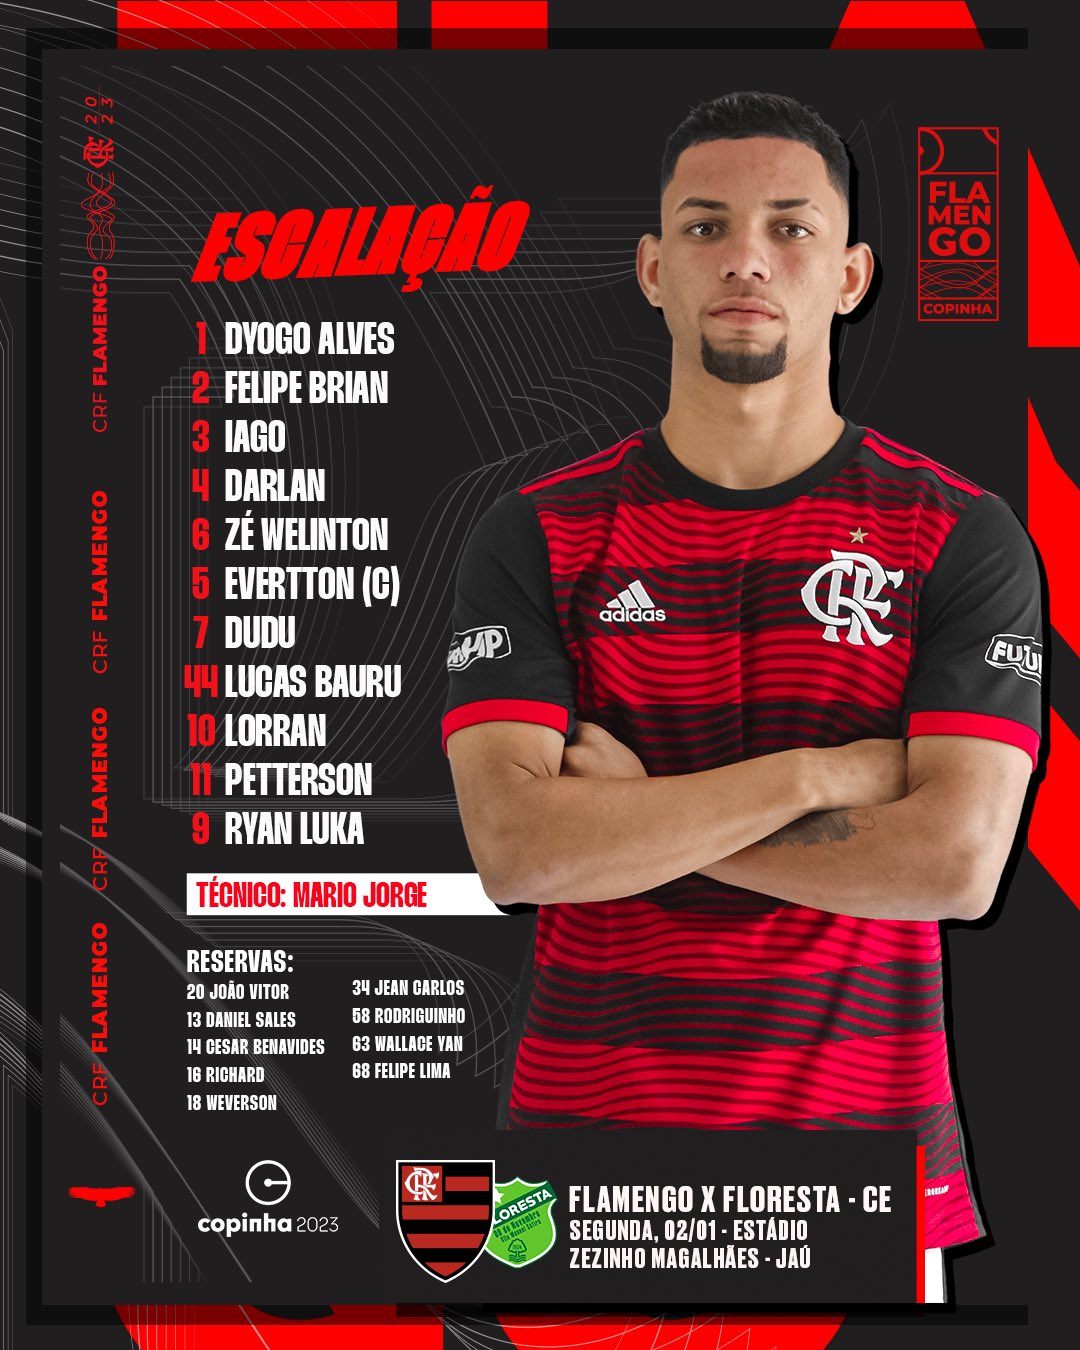 SAIU! Flamengo divulga escalação para jogo contra o Atlético-MG - Coluna do  Fla